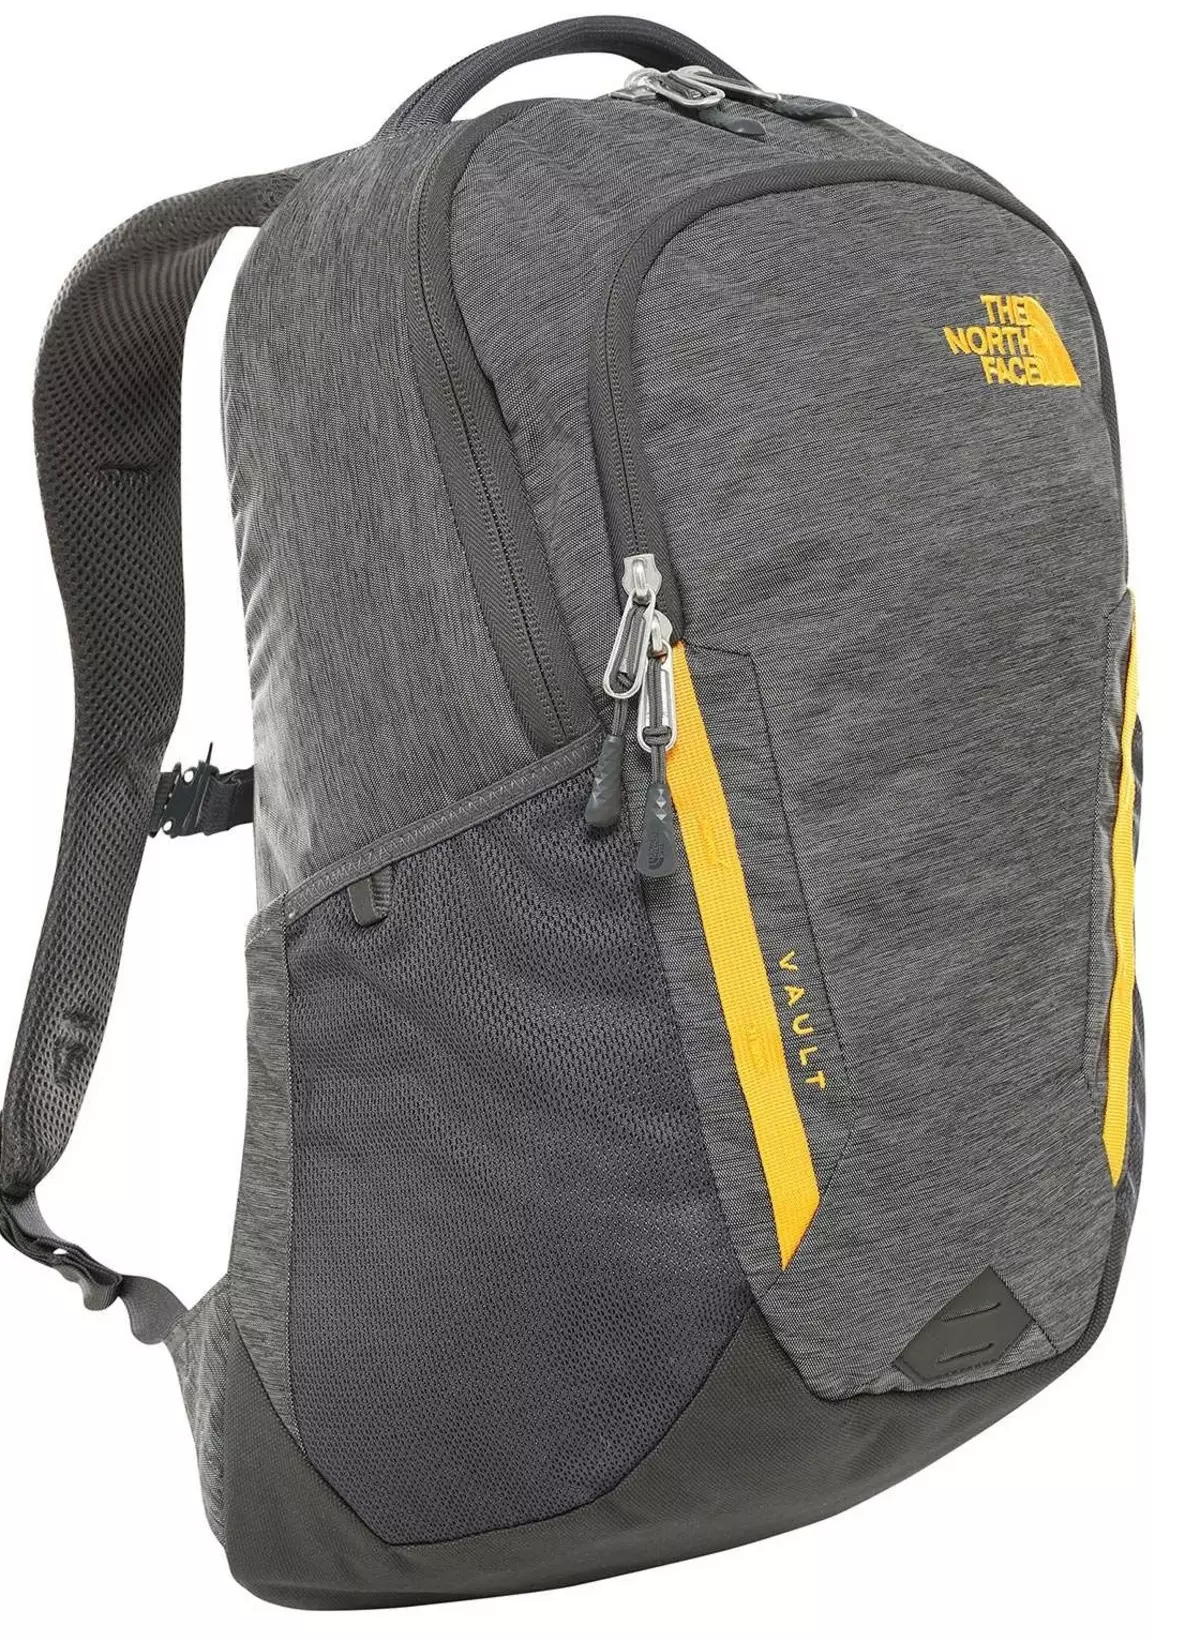 उत्तर चेहरा backpacks: बॅकपॅक-बॅग आणि शहरी बॅकपॅक, पिवळा आणि काळा मॉडेल, हिरव्या आणि निळा, लाल आणि इतर 15407_27